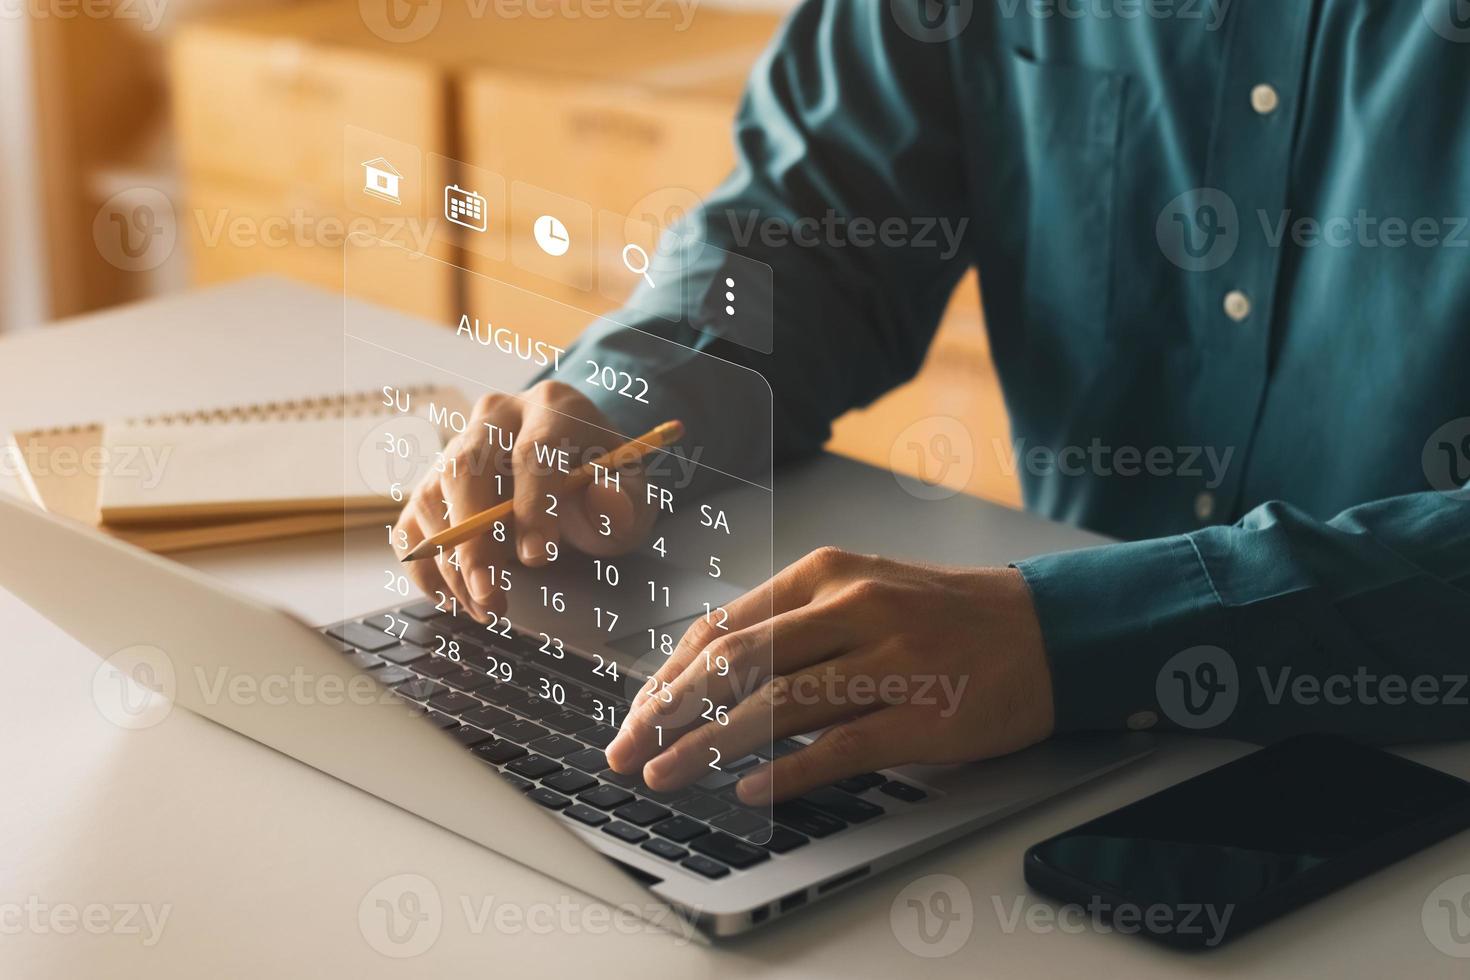 zakenman die laptopcomputer gebruikt, plant werk en werkt taken bij met mijlpaalvoortgangsplanning en virtuele diagramplanningsdiagrammen. foto